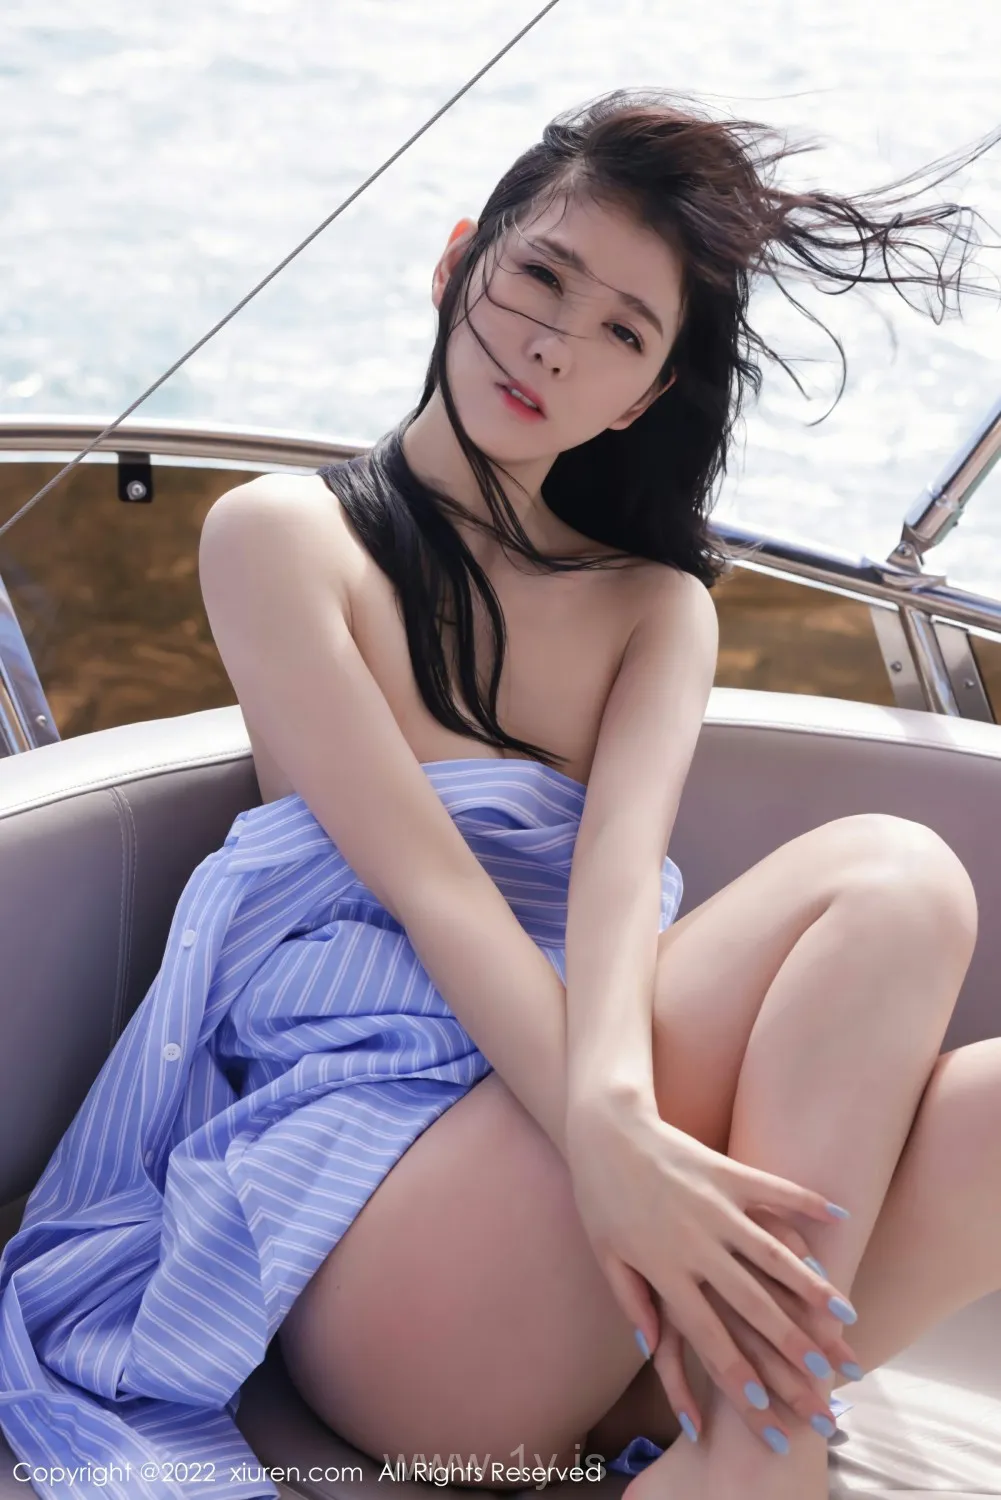 XIUREN(秀人网) NO.4852 Stunning & Well-developed Asian Girl 李雅柔182CM